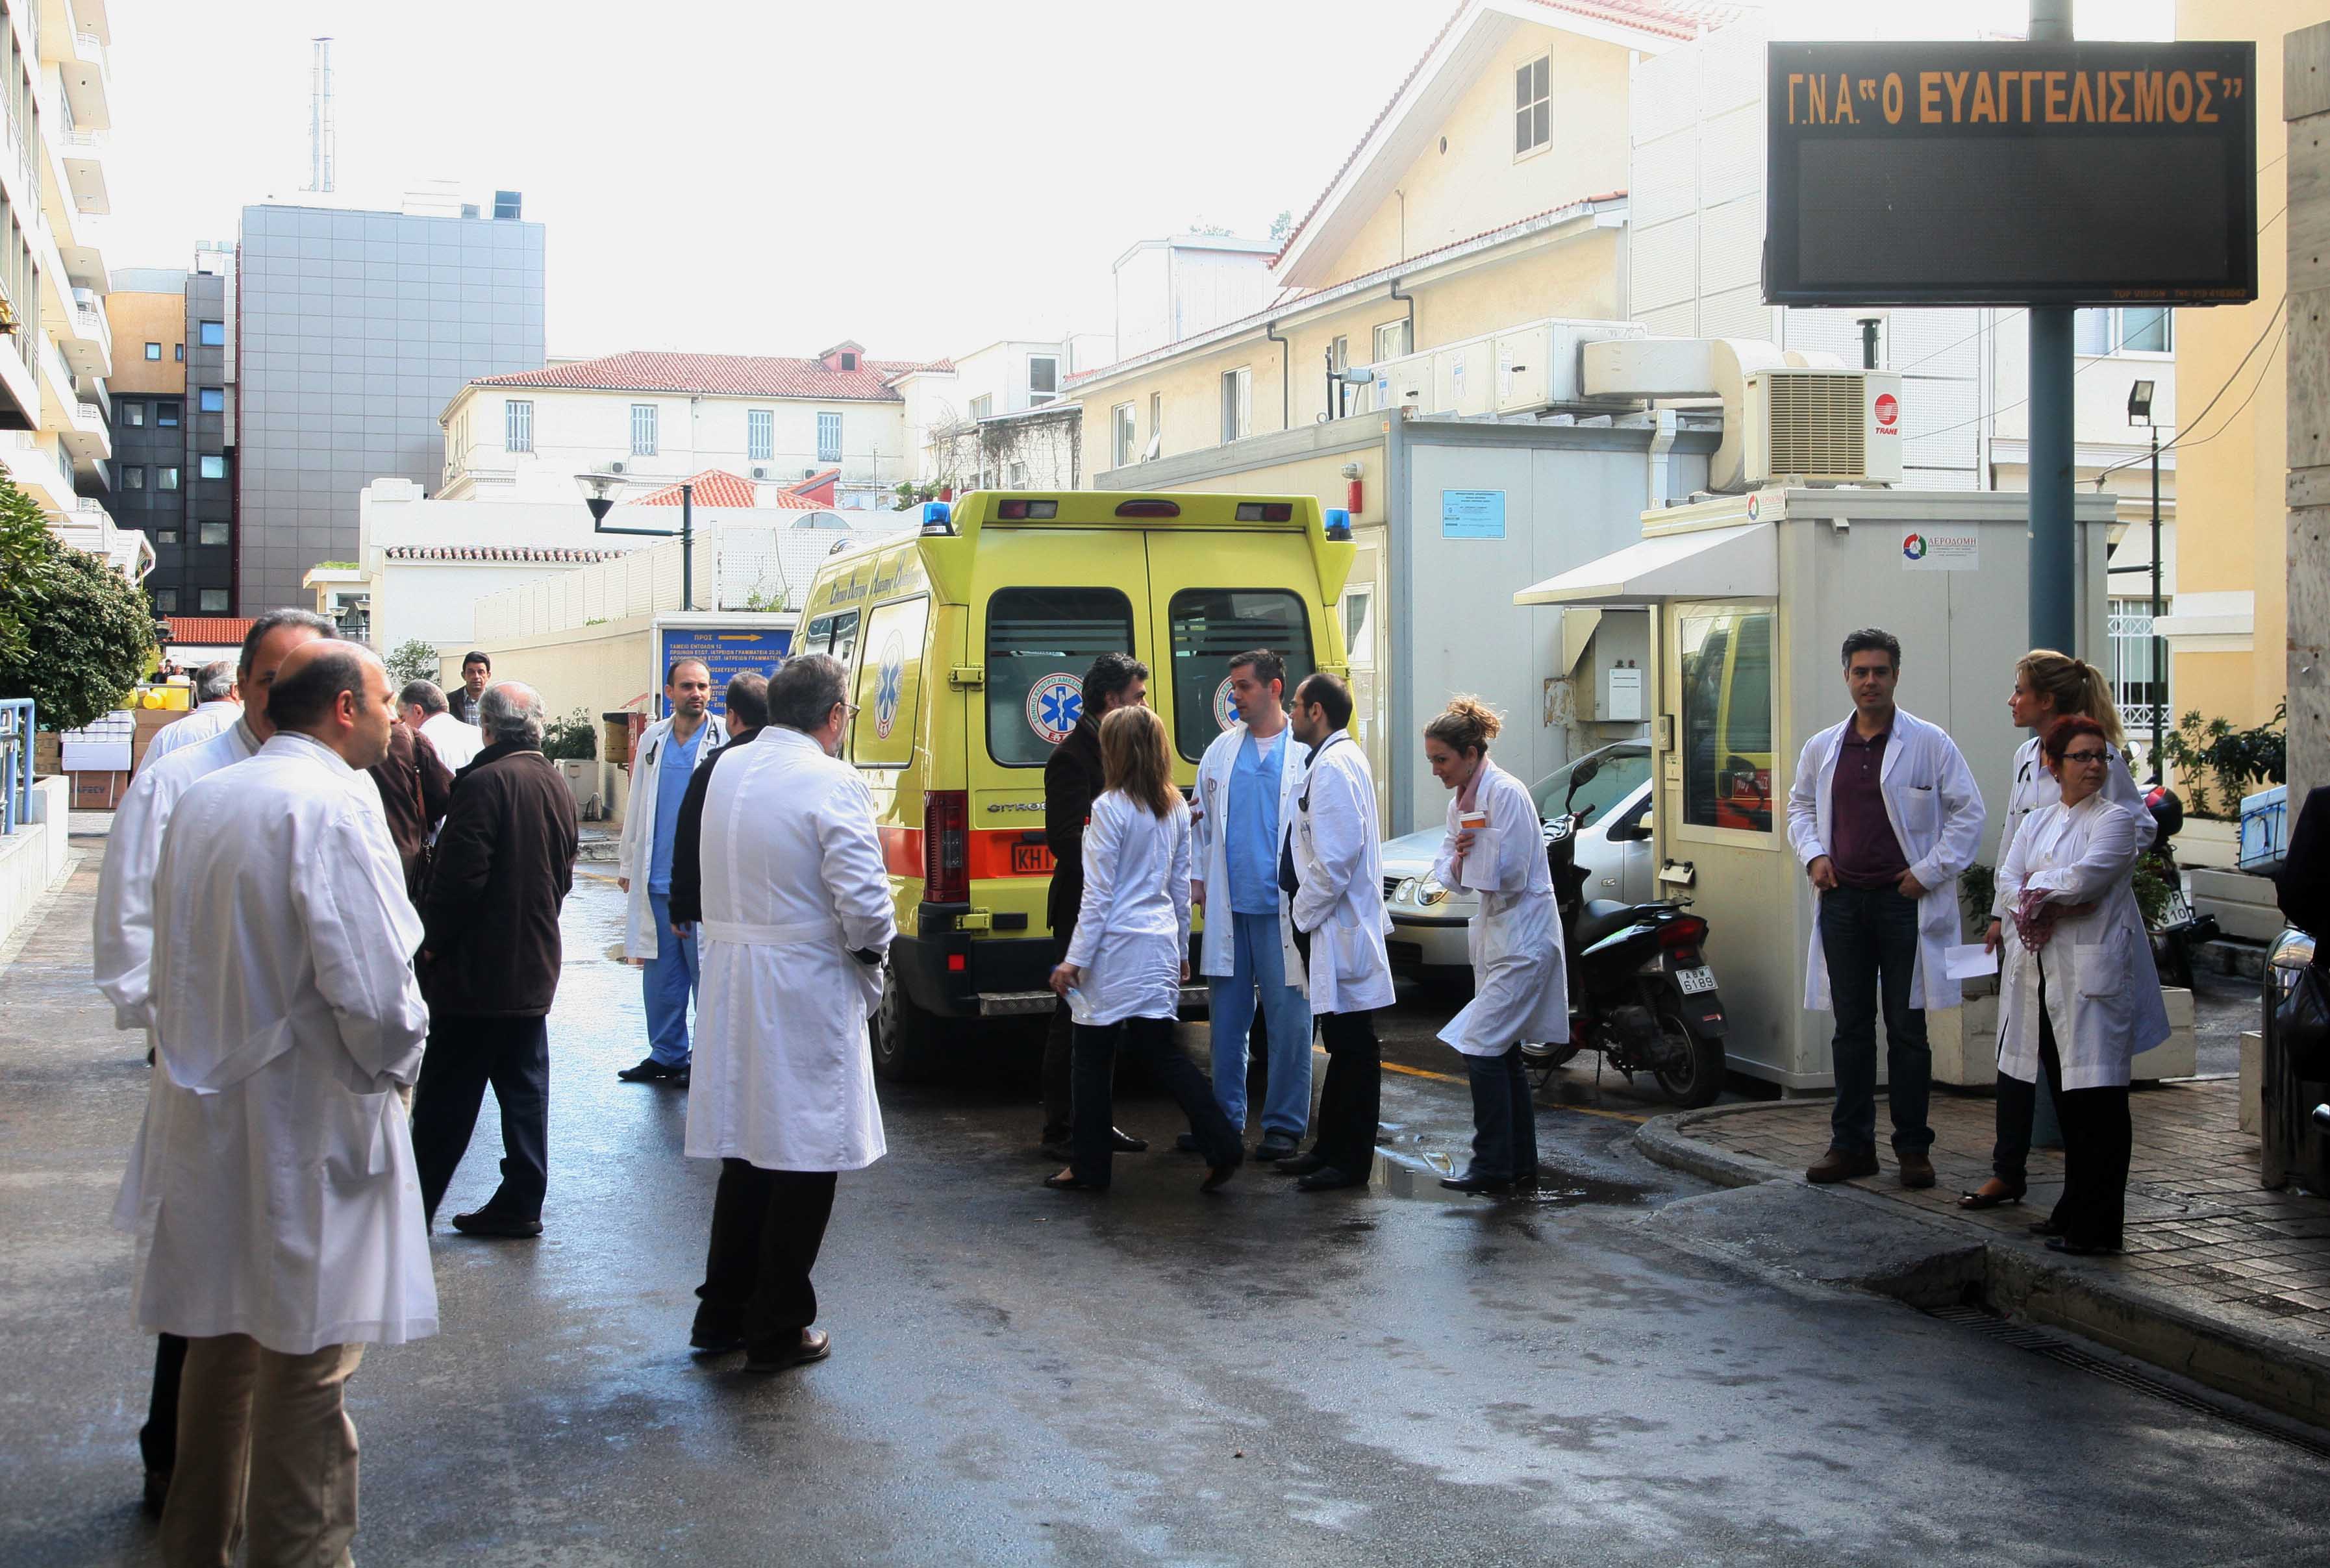 Μέτρα προστασίας της δημόσιας υγείας ζητά ο Ιατρικός Σύλλογος Αθηνών